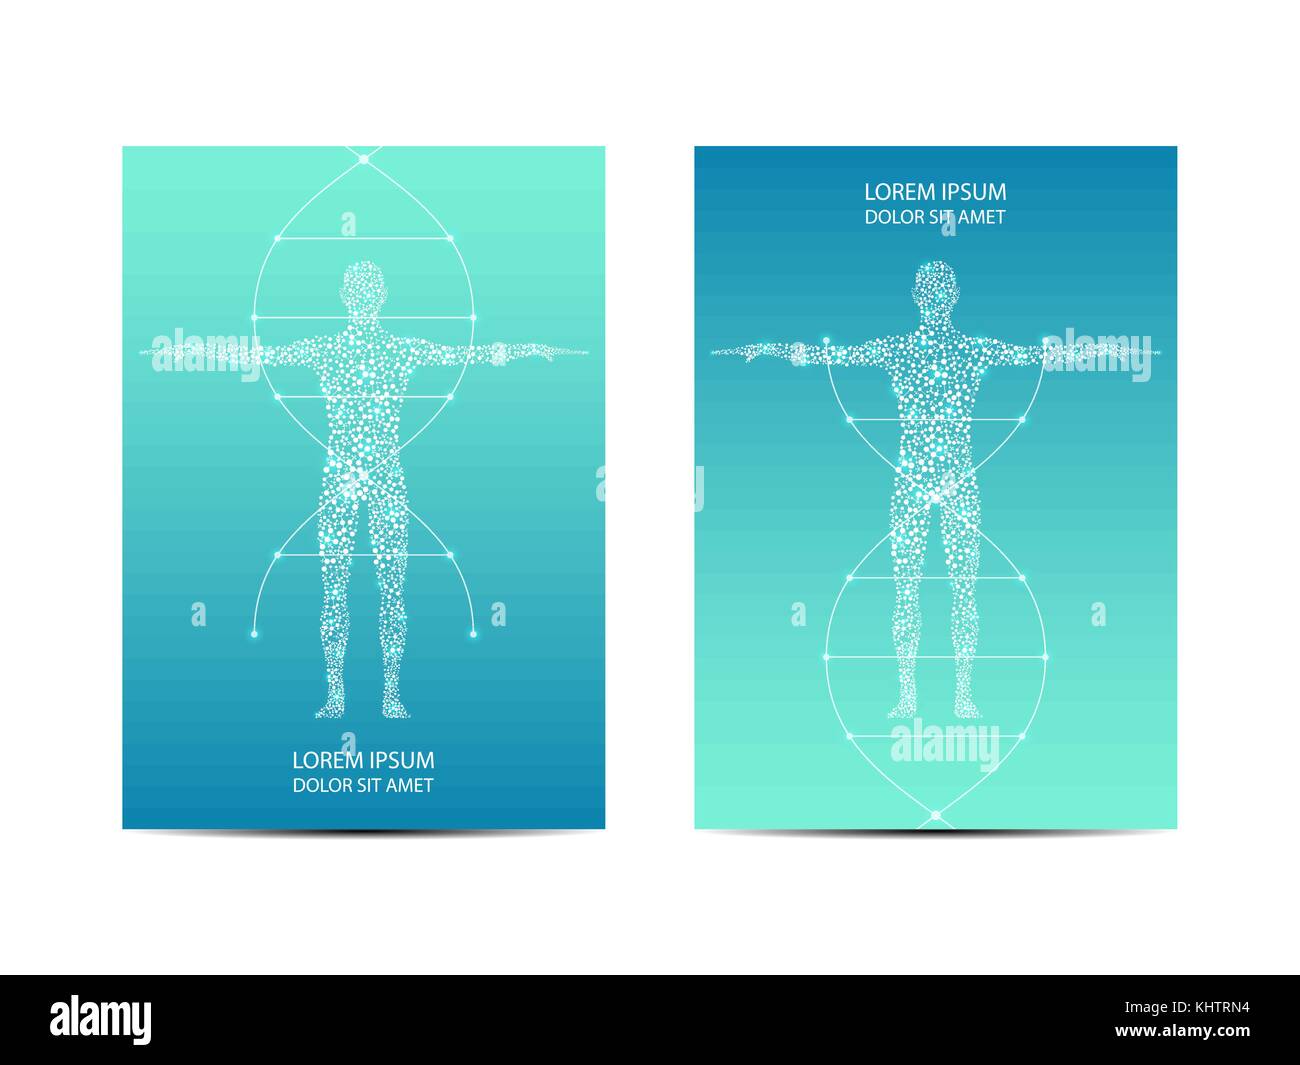 Coperchio o poster design con il corpo umano, scientifico e tecnologico in concetto, illustrazione vettoriale. Illustrazione Vettoriale